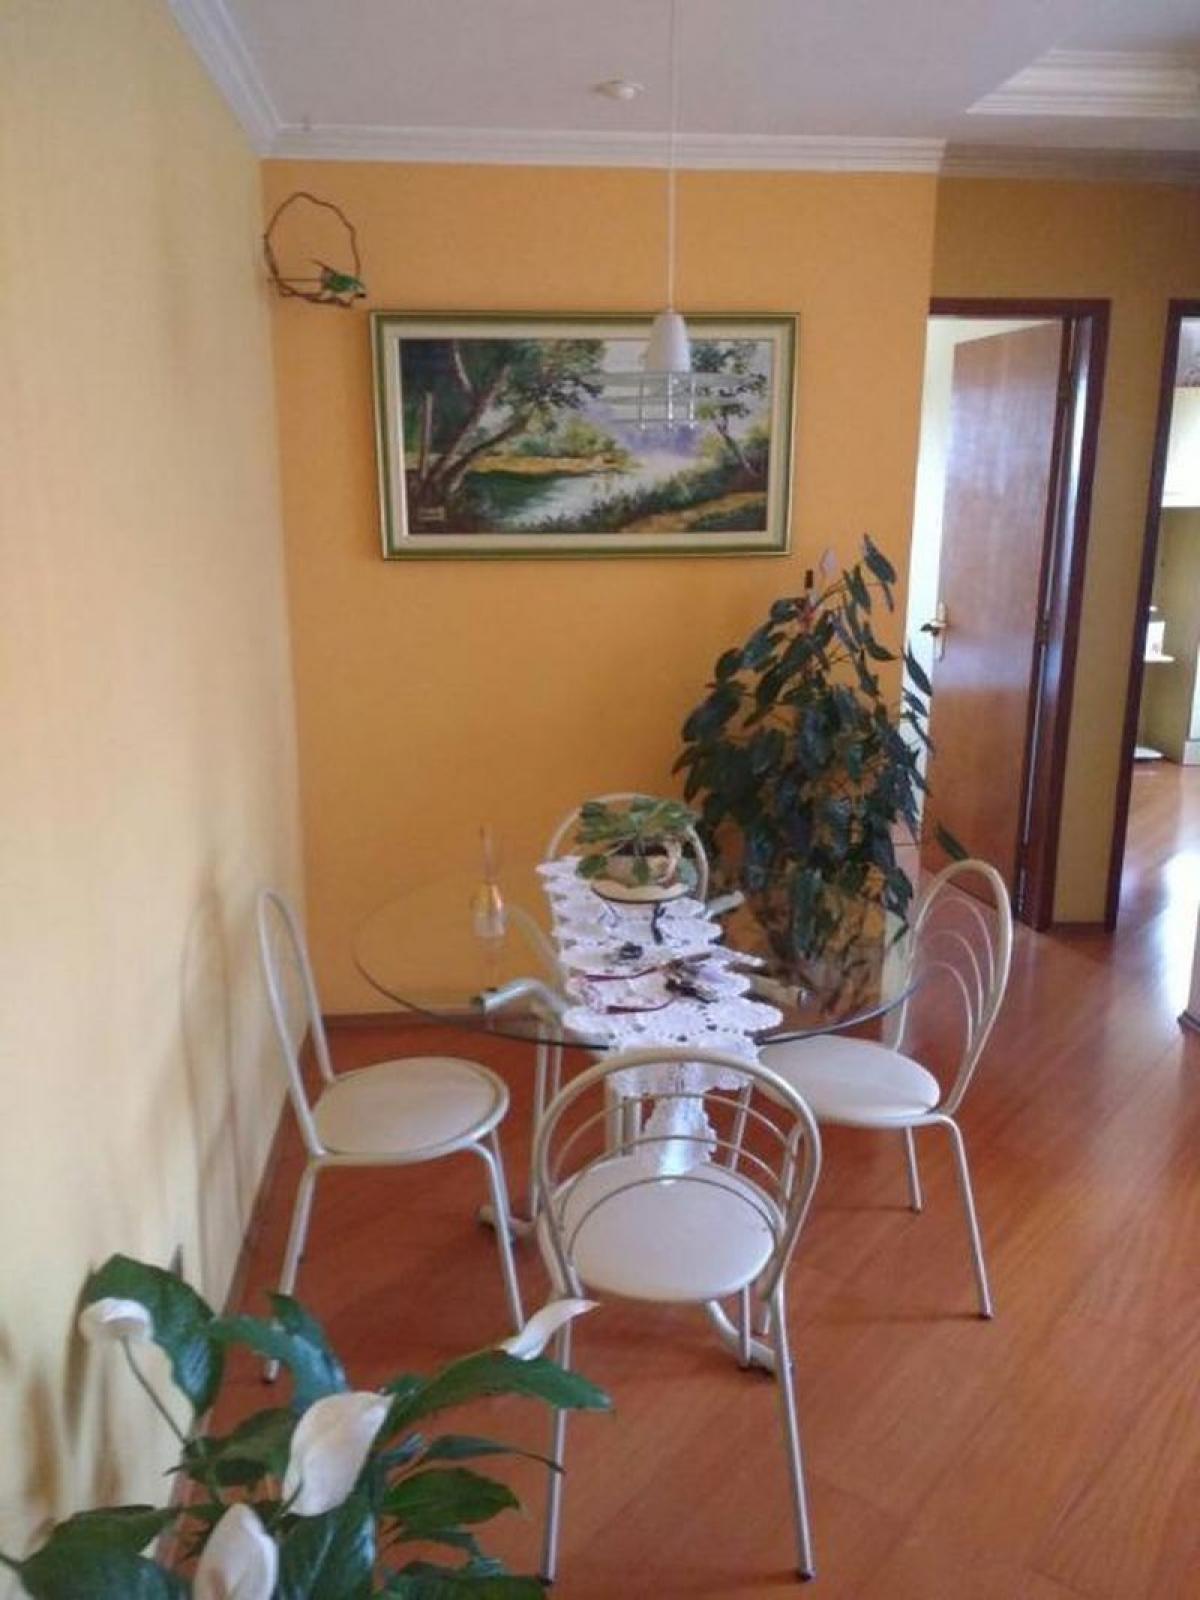 Picture of Apartment For Sale in Taboao Da Serra, Sao Paulo, Brazil